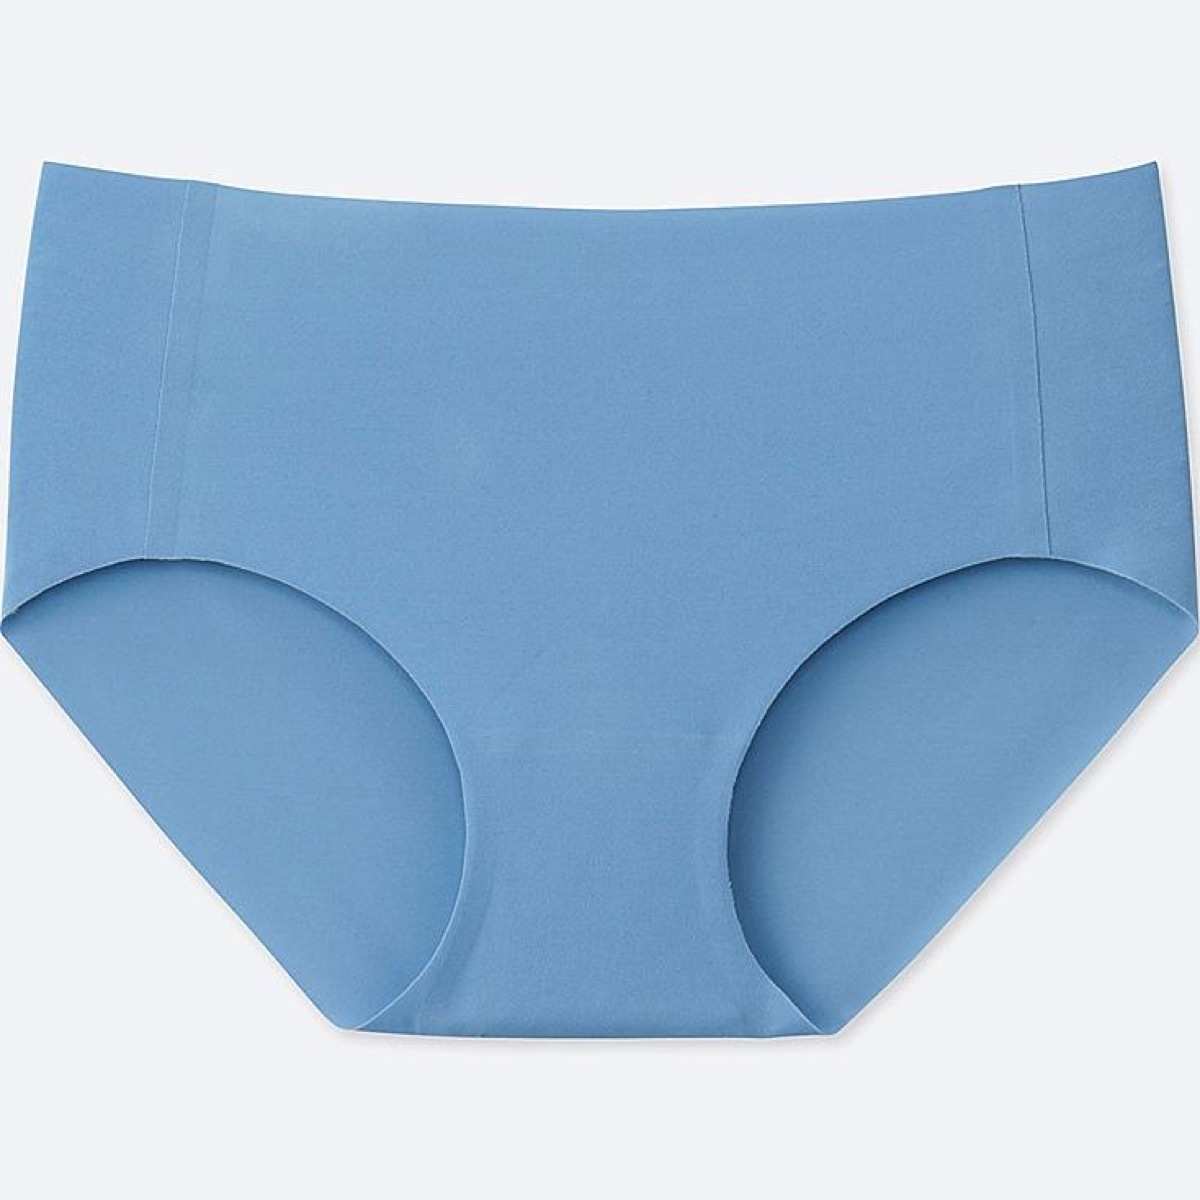 Uniqlo AIRism Underwear